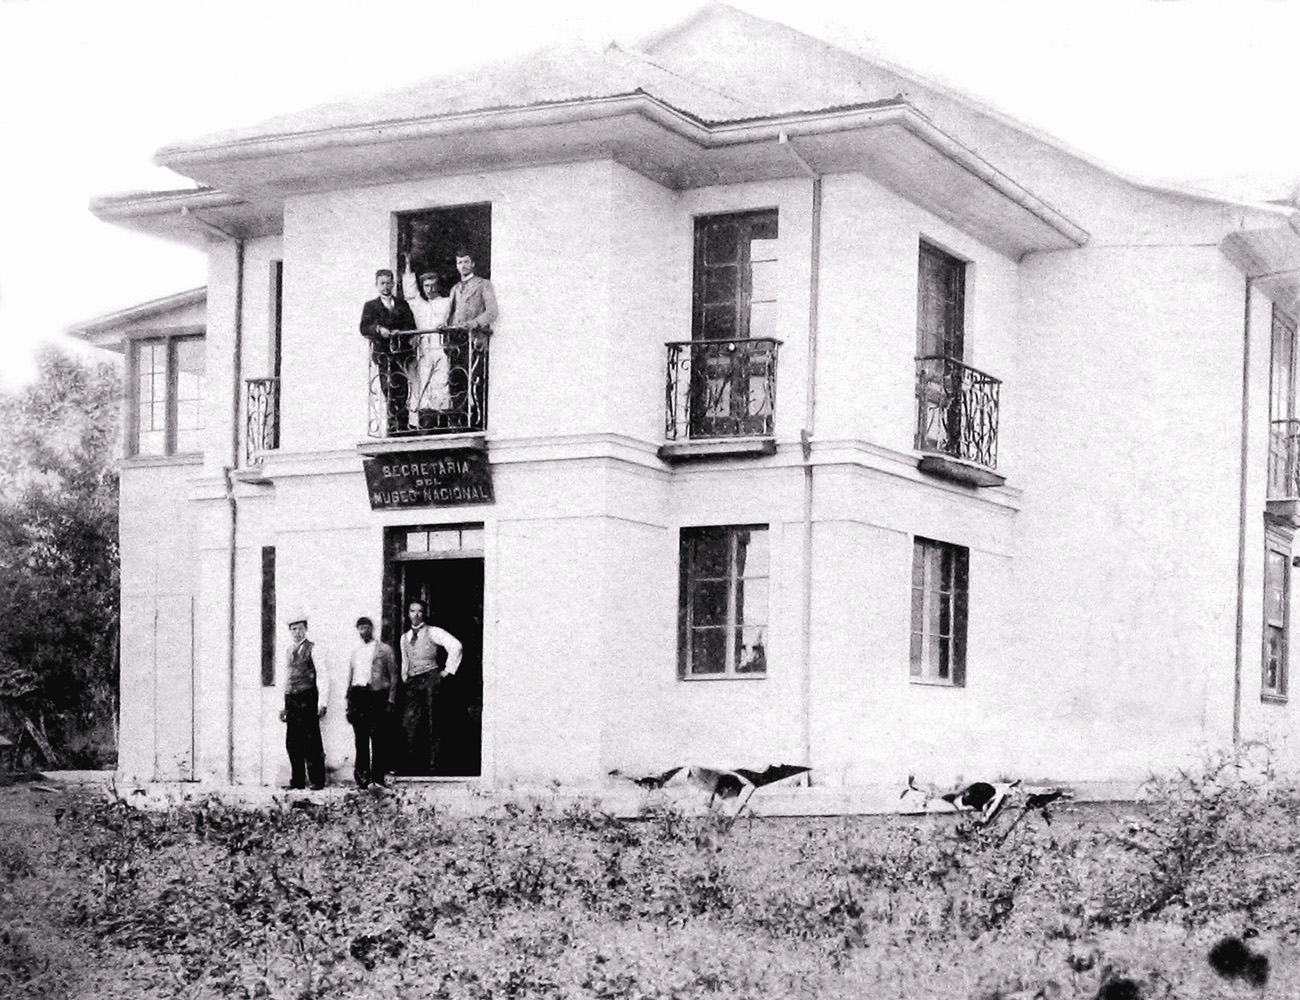 Segunda sede: "El laberinto" cerca del Liceo de Costa Rica, 1896-1903